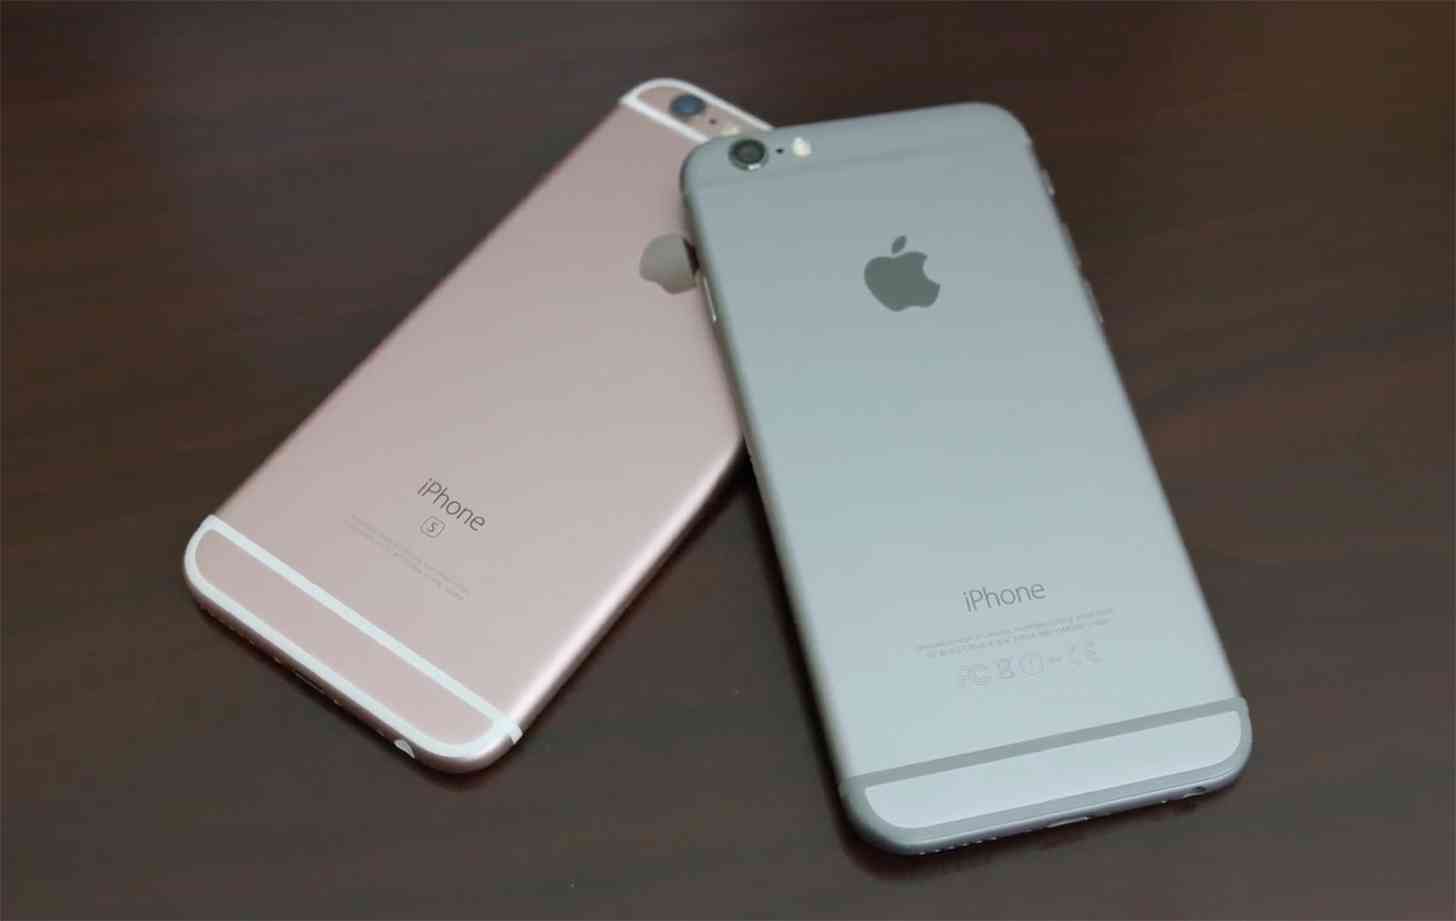 iPhone 6, iPhone 6s comparison